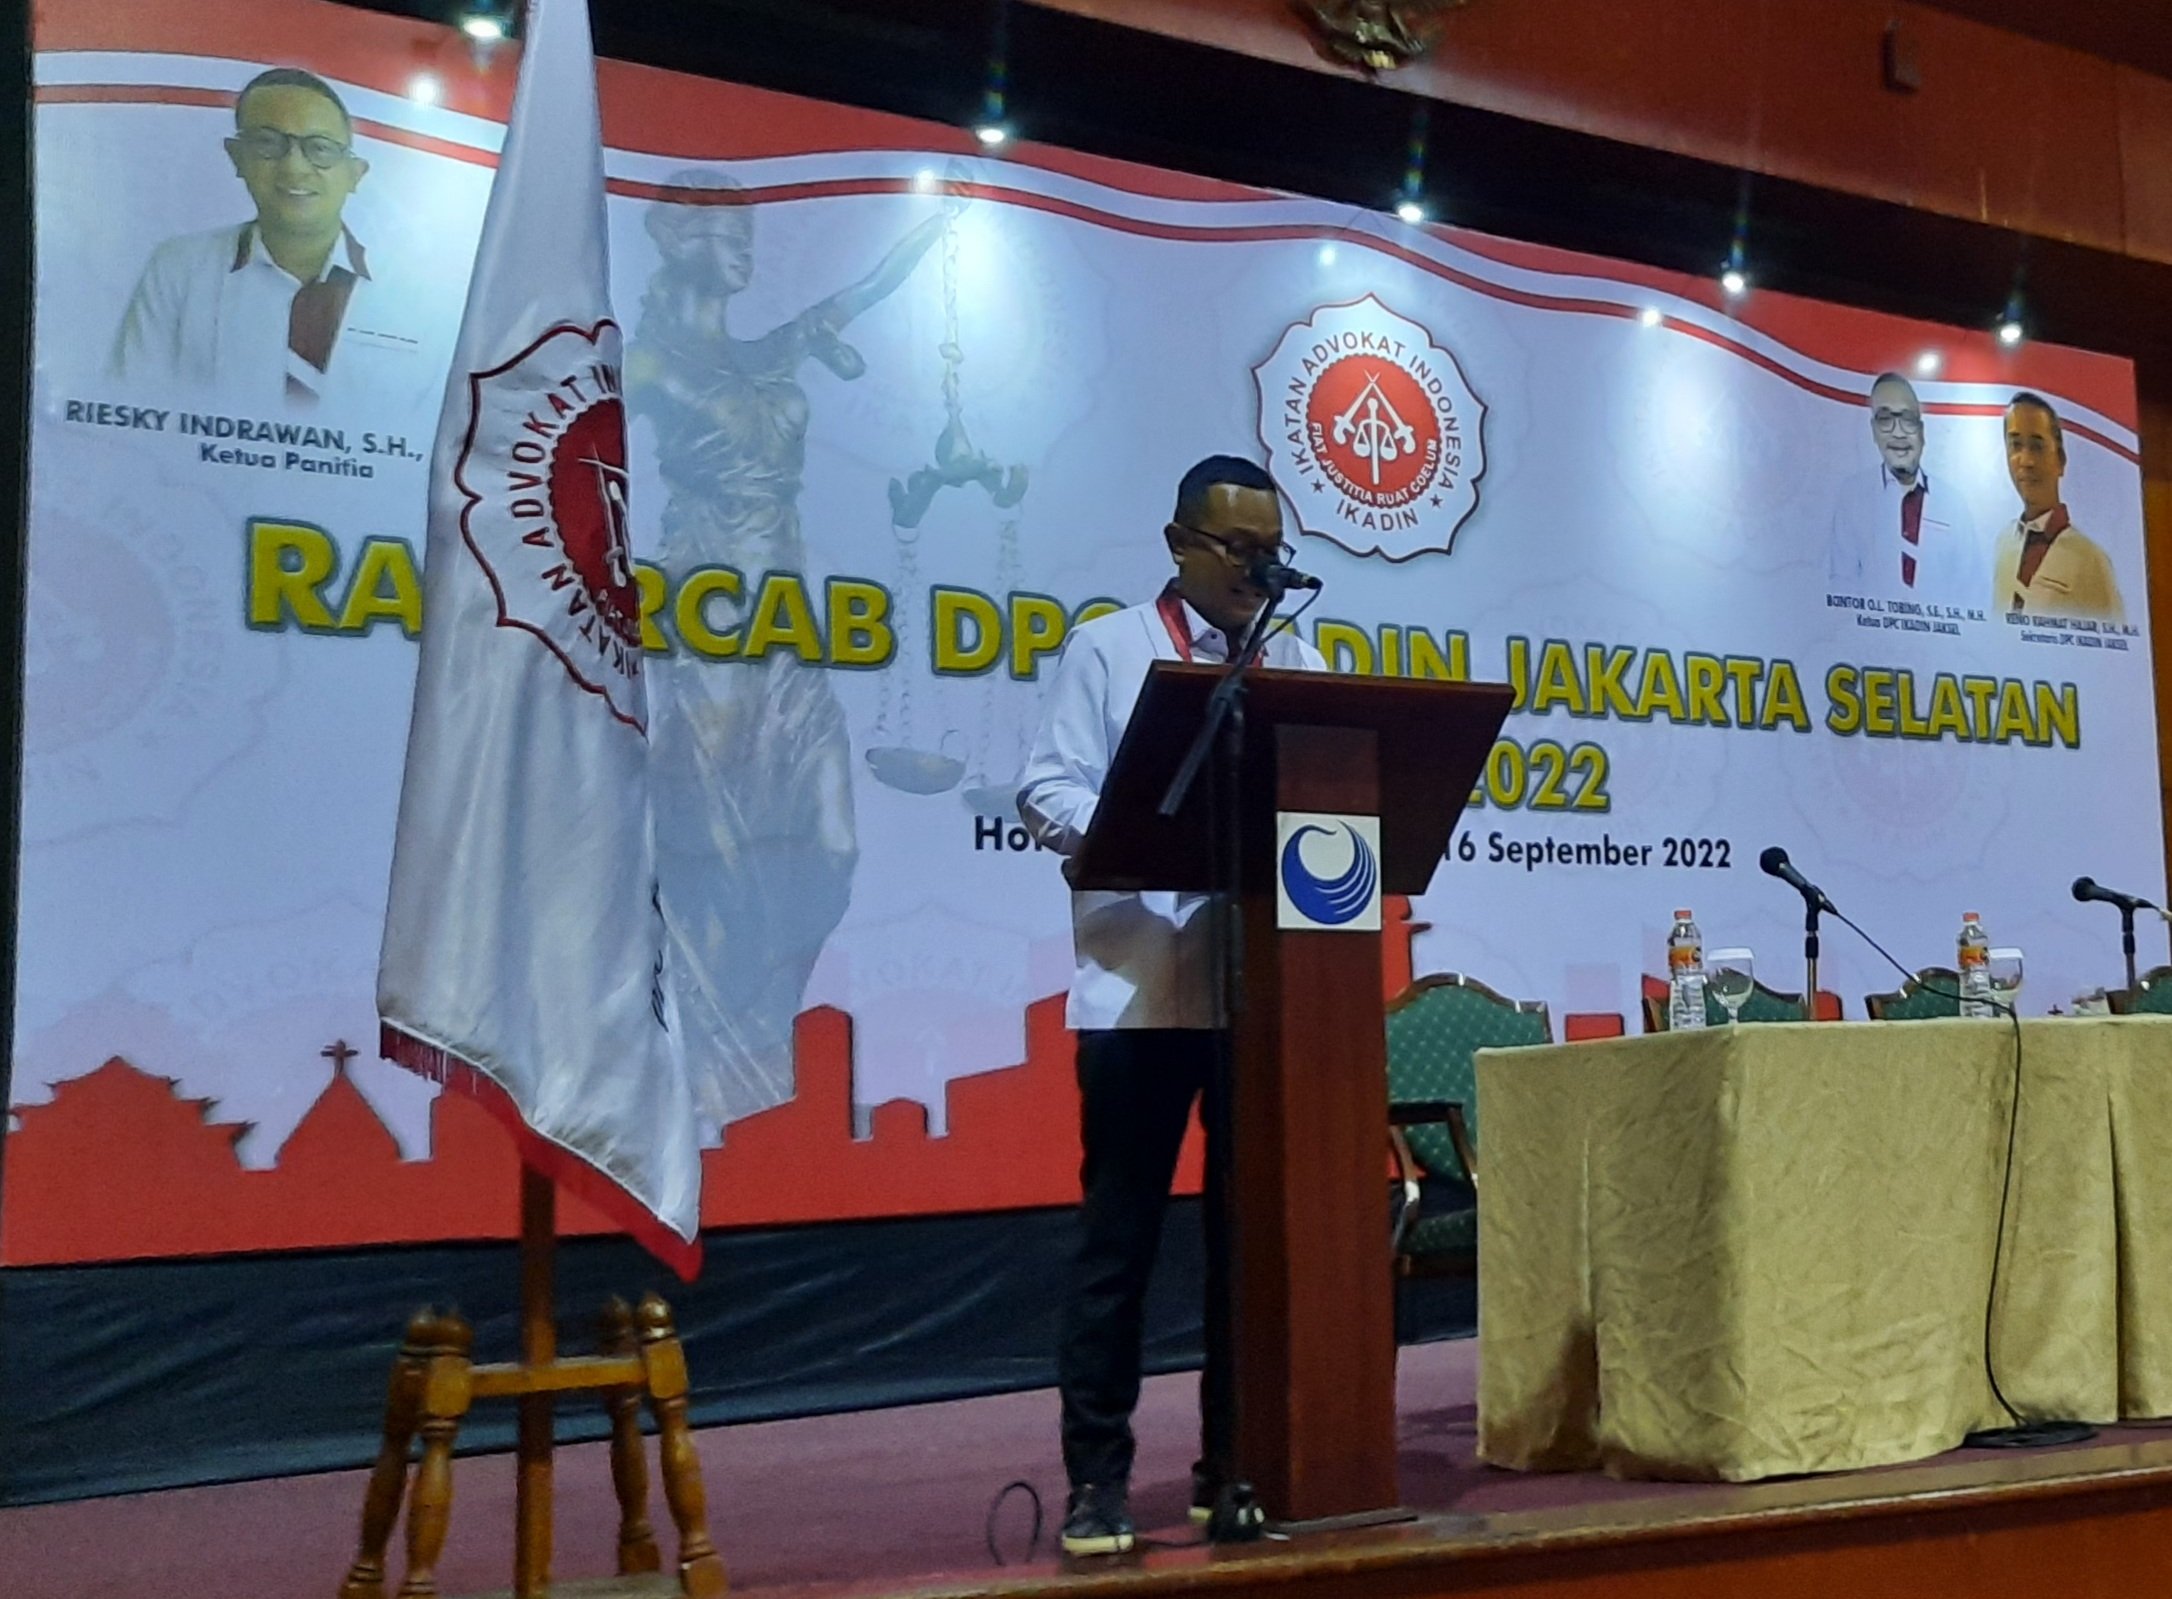 Ketua Panitia Rakercab DPC Ikadin Jakarta Selatan, Riesky Indrawan.